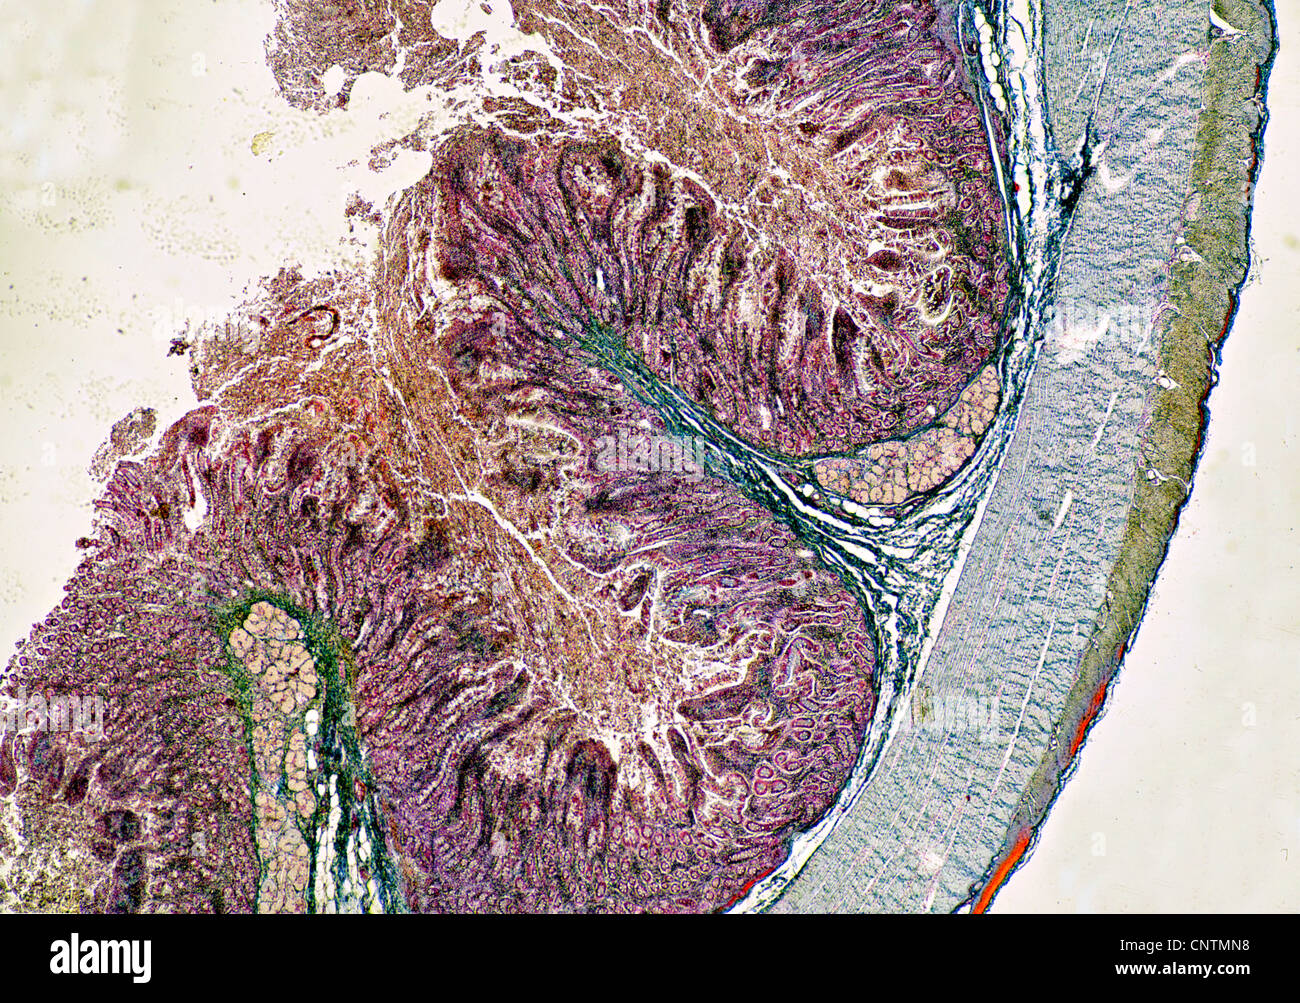 Personas, seres humanos, seres humanos (Homo sapiens sapiens), la sección transversal del intestino delgado Foto de stock